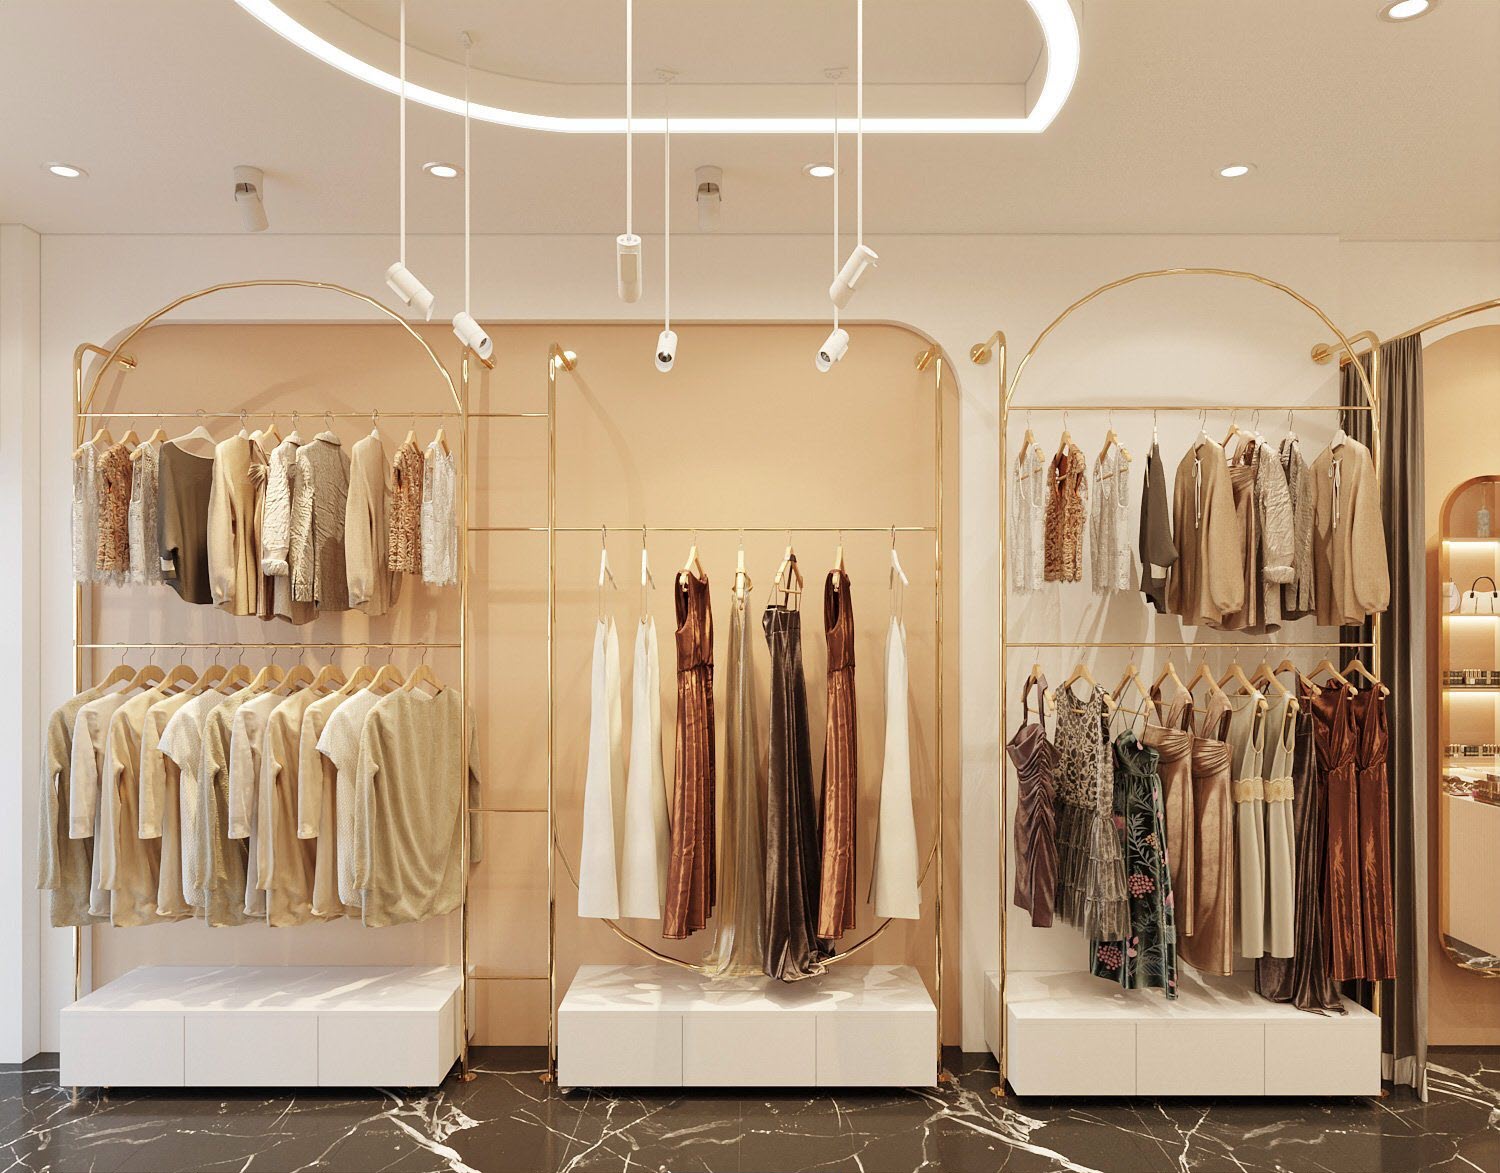 Nội thất cửa hàng "sang xịn mịn" cũng góp phần truyền cảm hứng mua sắm cho các tín đồ thời trang Hàn Quốc.